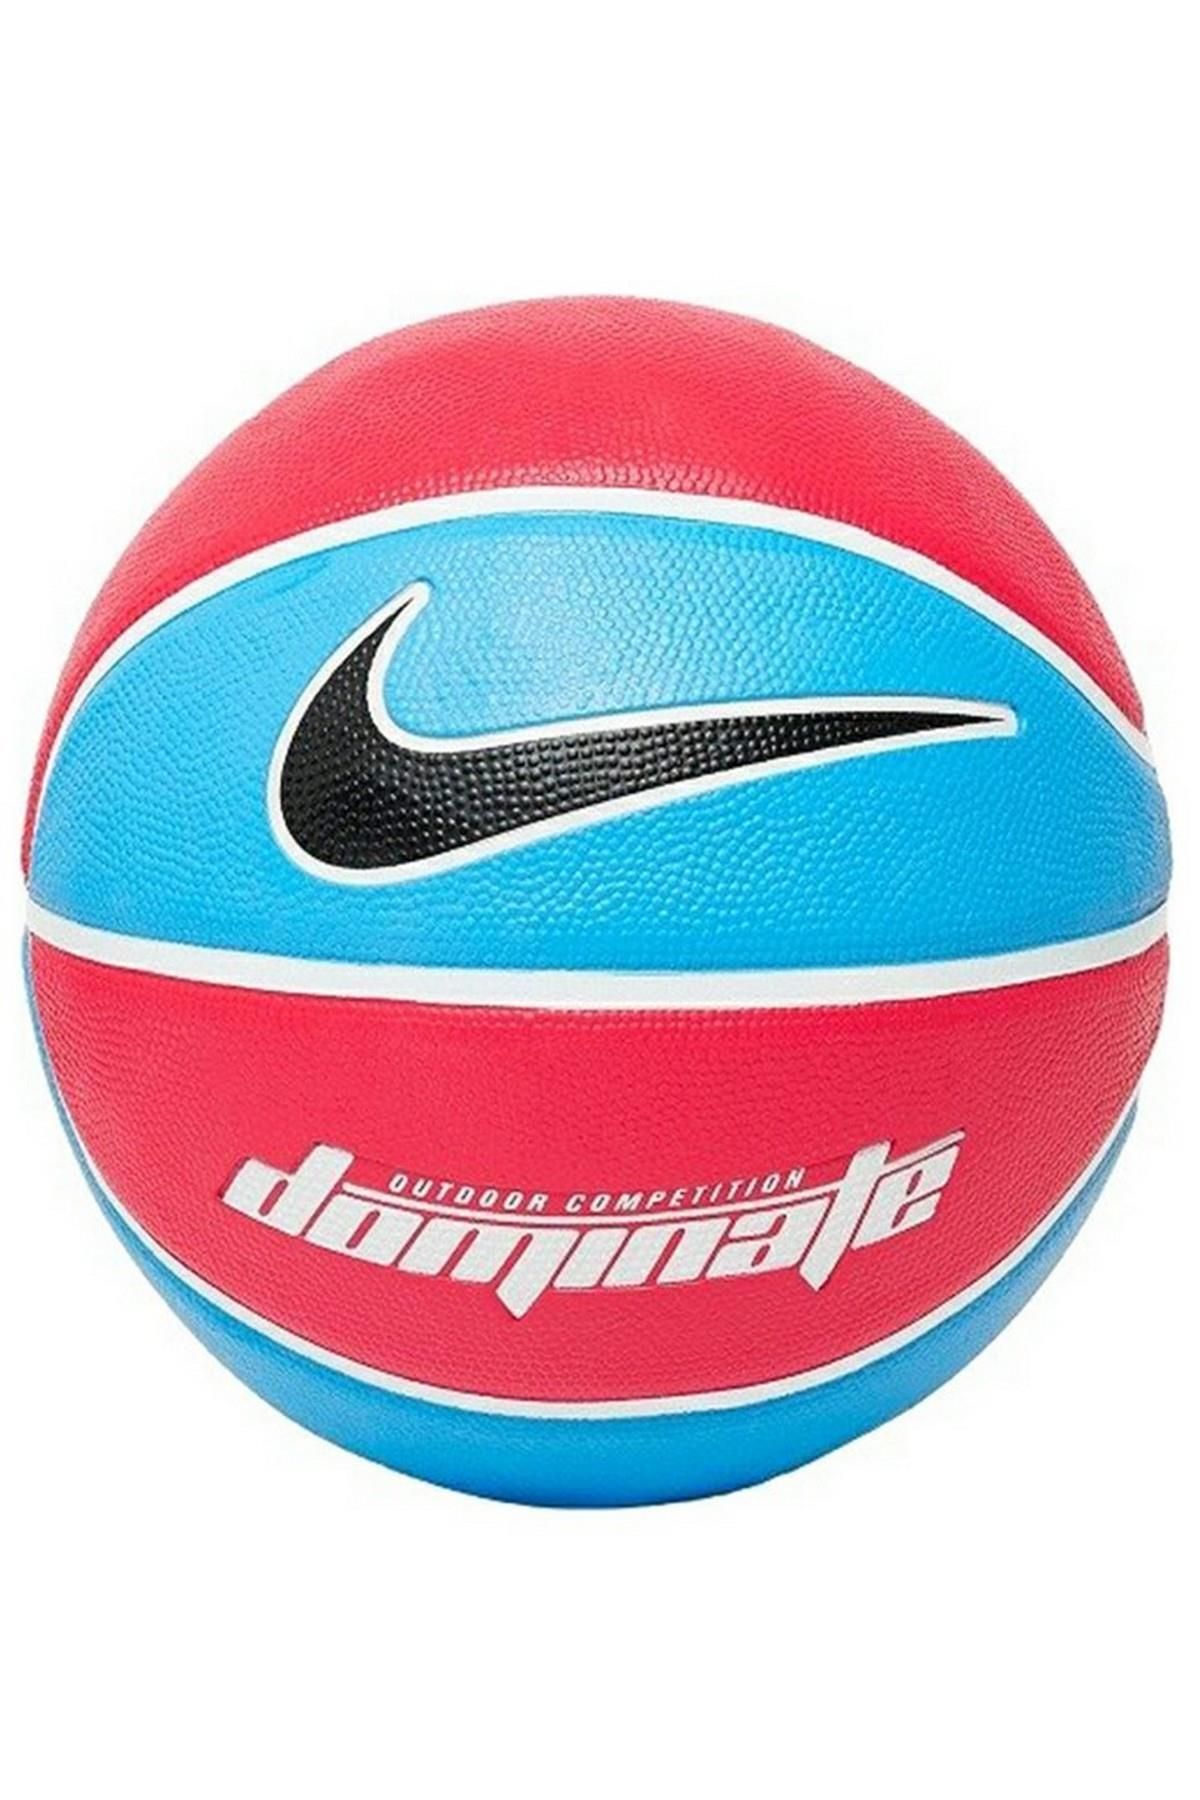 Nike N.000.1165 - Dominate Basketbol Topu